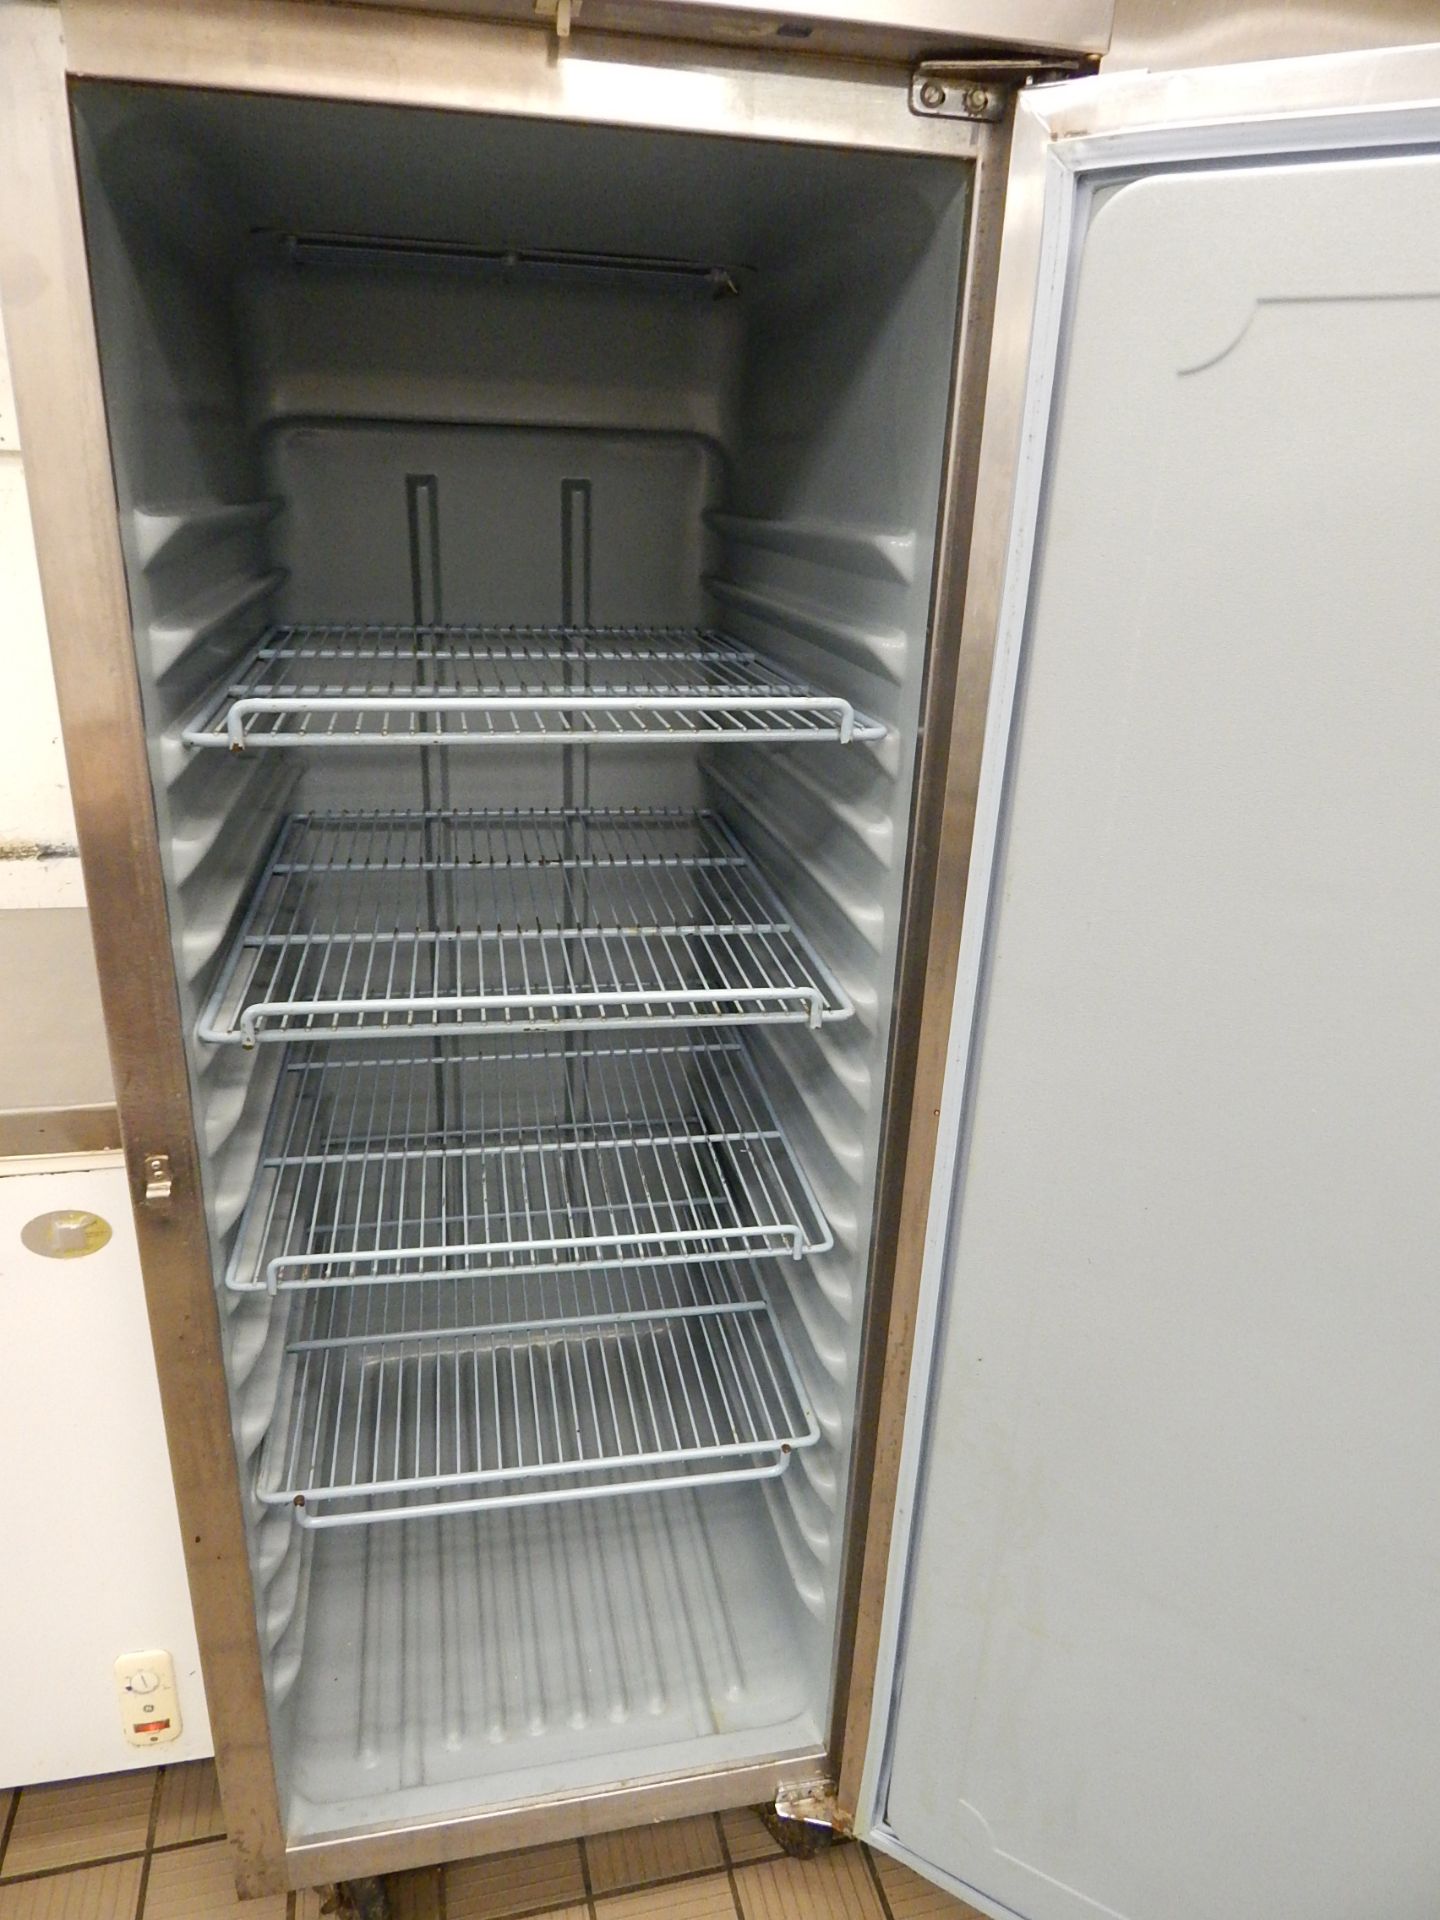 Delfield 1-Door Upright Refrigerator - Image 2 of 3